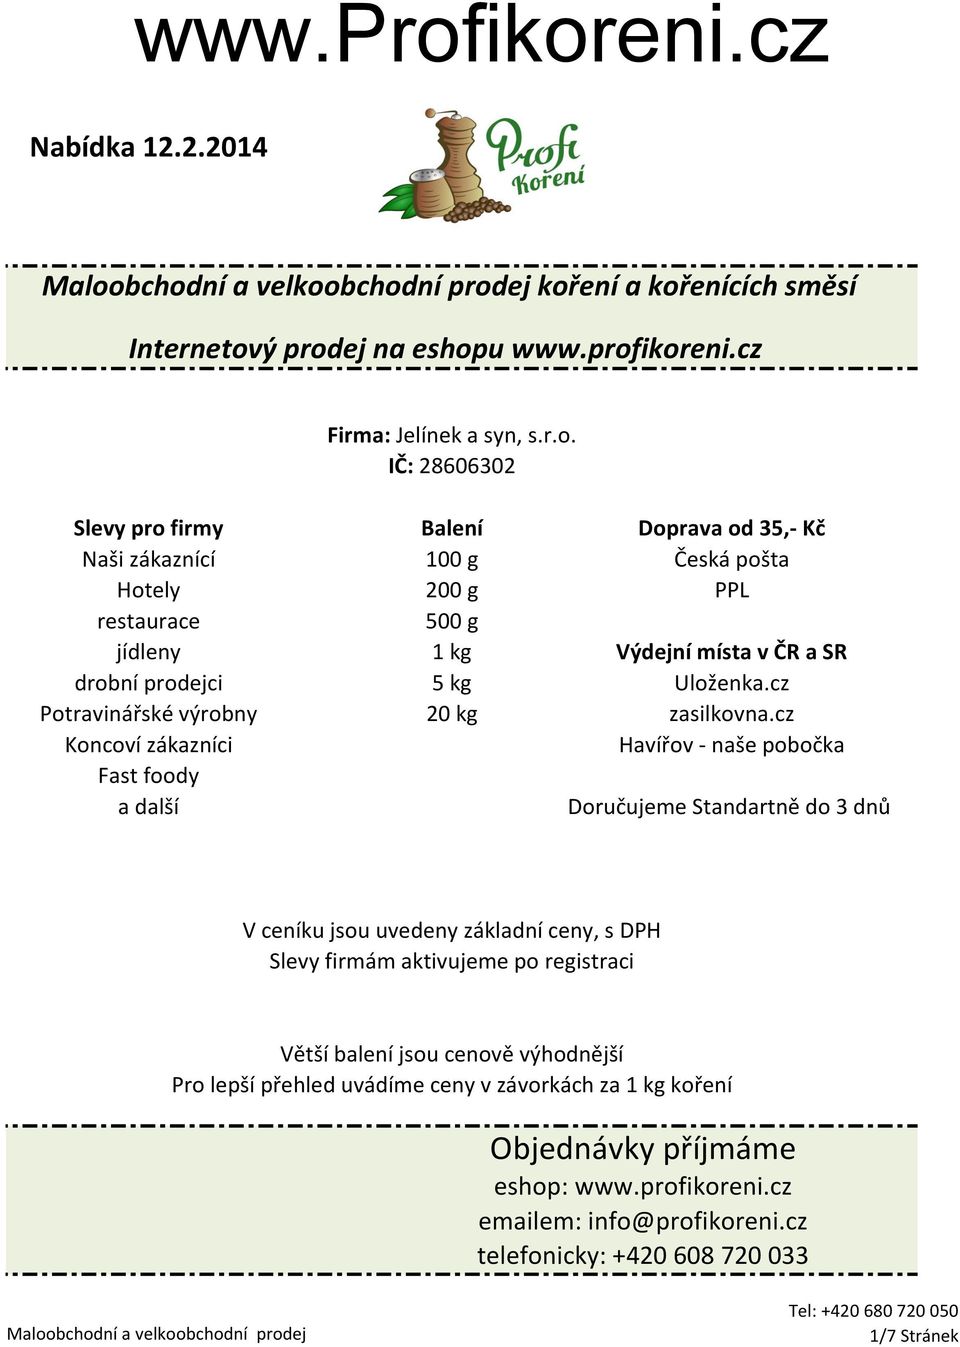 zákaznící 100 g Česká pošta Hotely 200 g PPL restaurace 500 g jídleny 1 kg Výdejní místa v ČR a SR drobní prodejci 5 kg Uloženka.cz Potravinářské výrobny 20 kg zasilkovna.